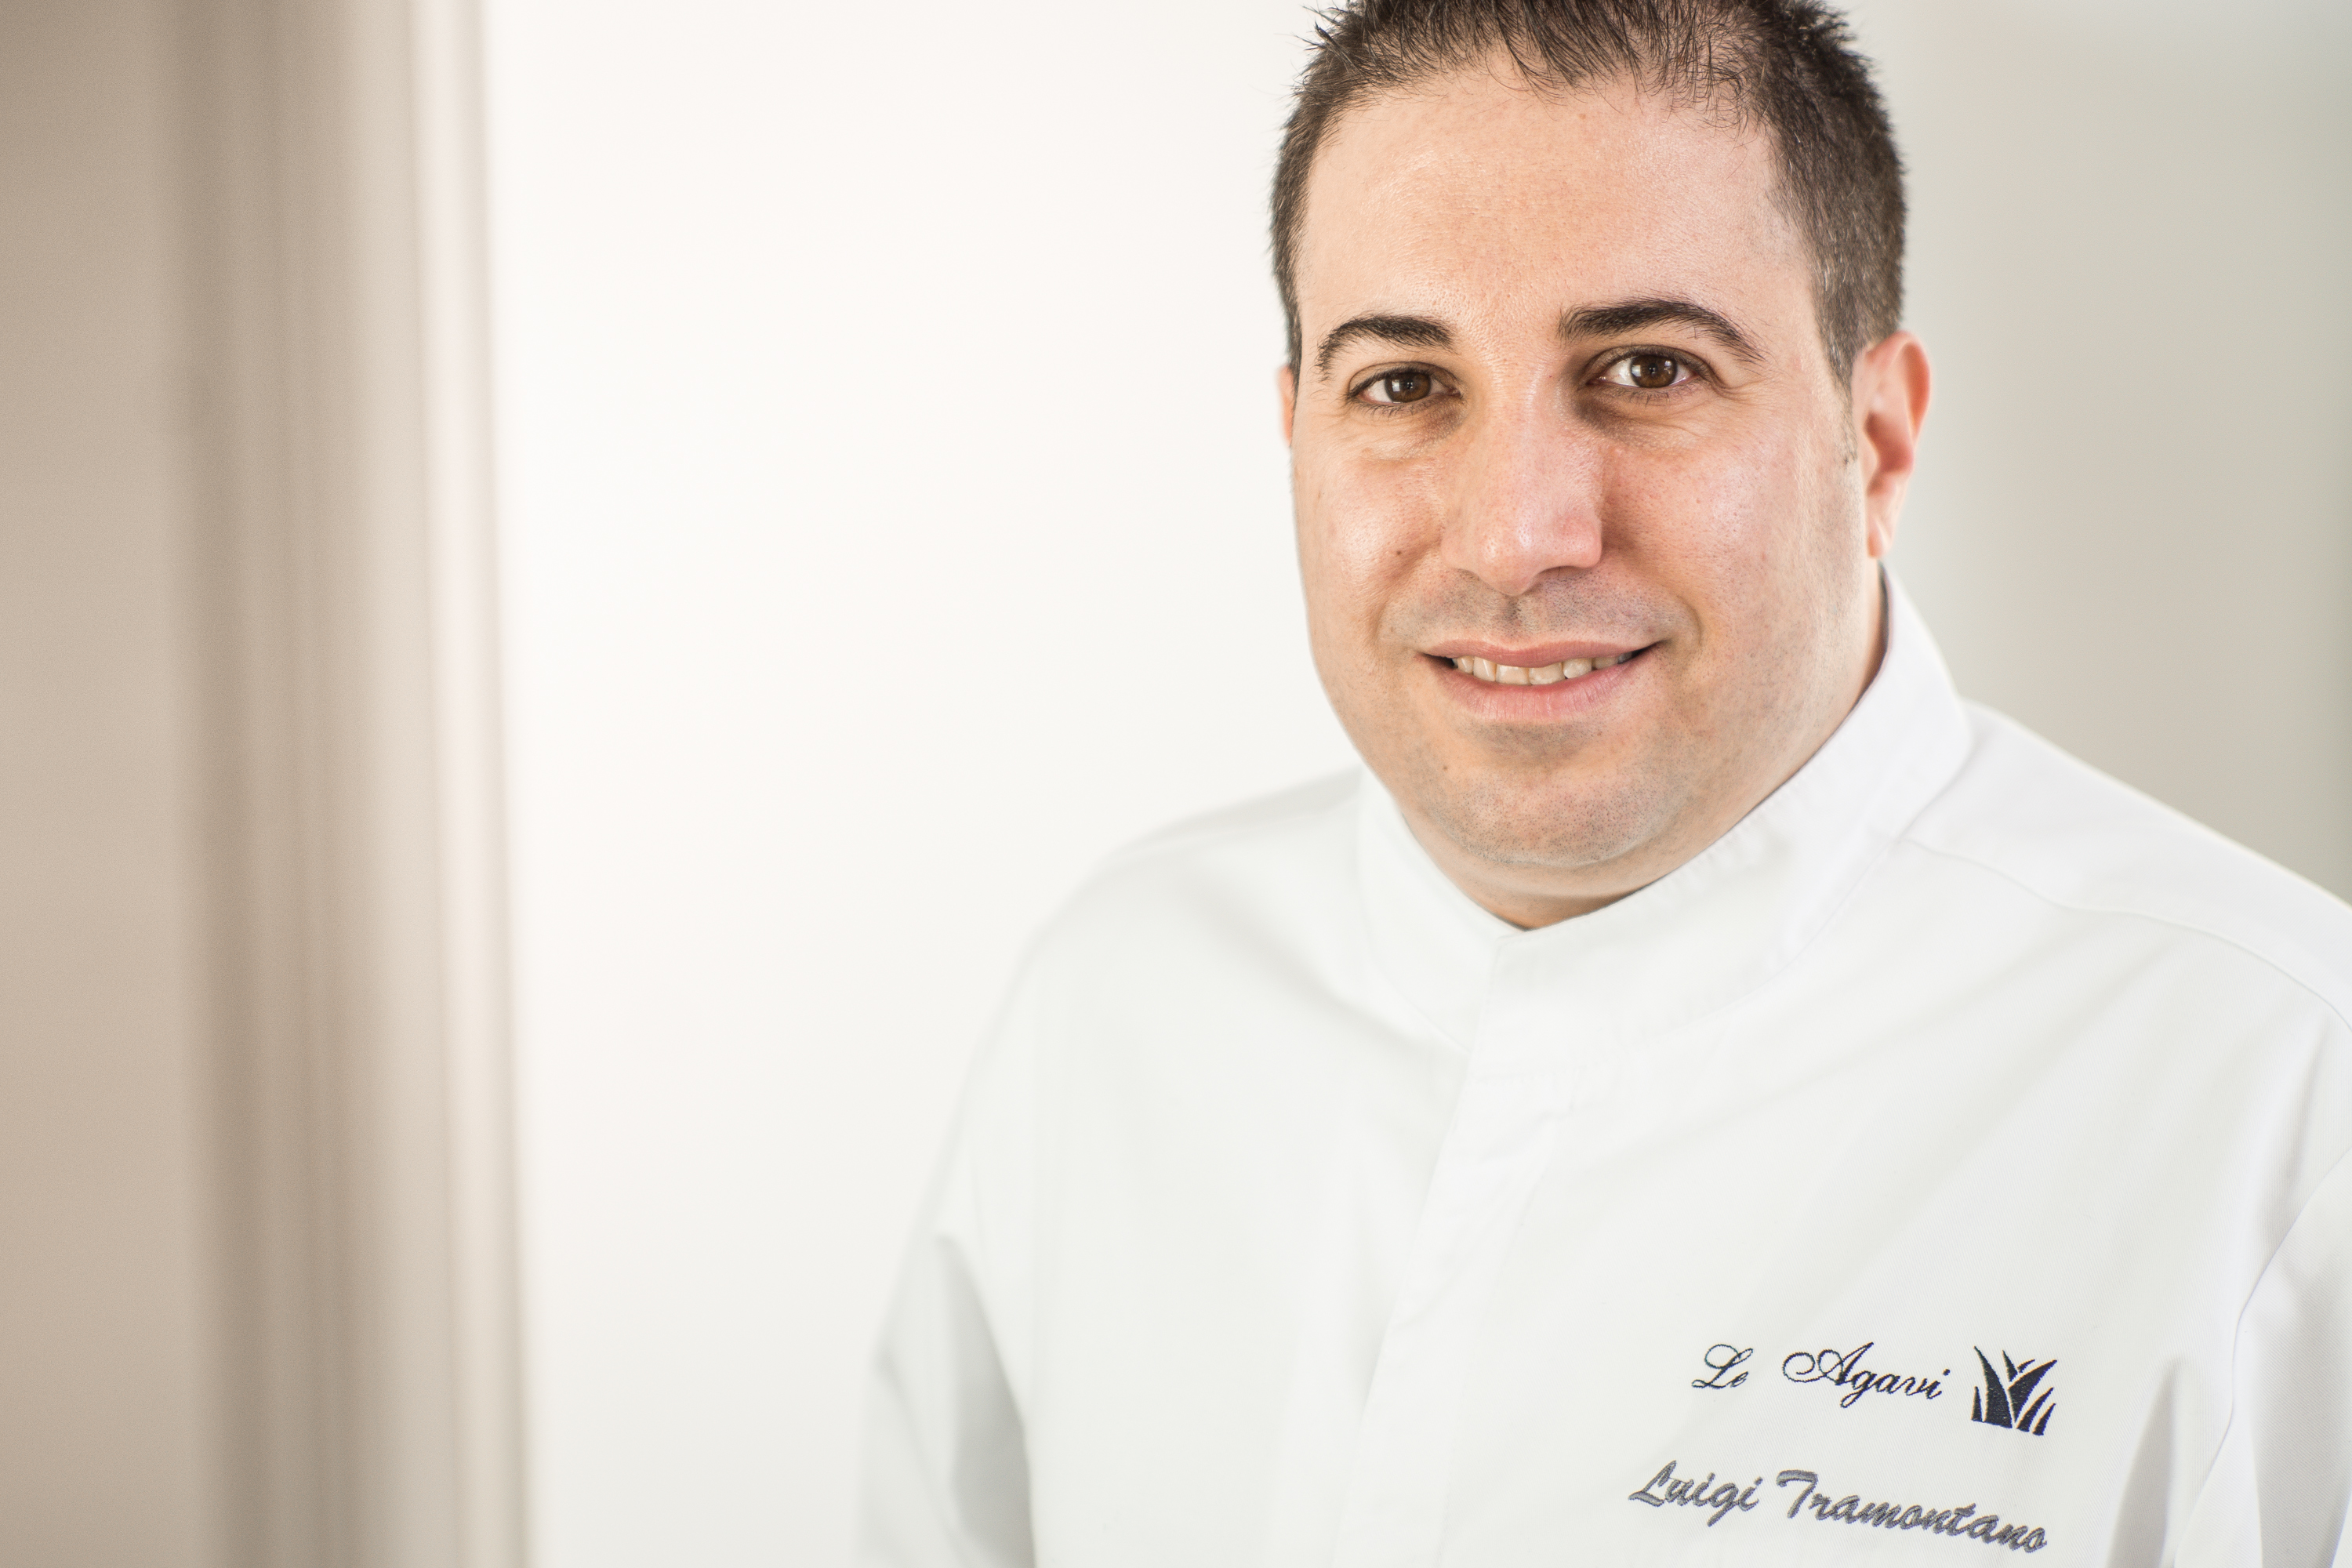 Luigi Tramontano è il nuovo Executive Chef dell’Hotel Le Agavi di Positano